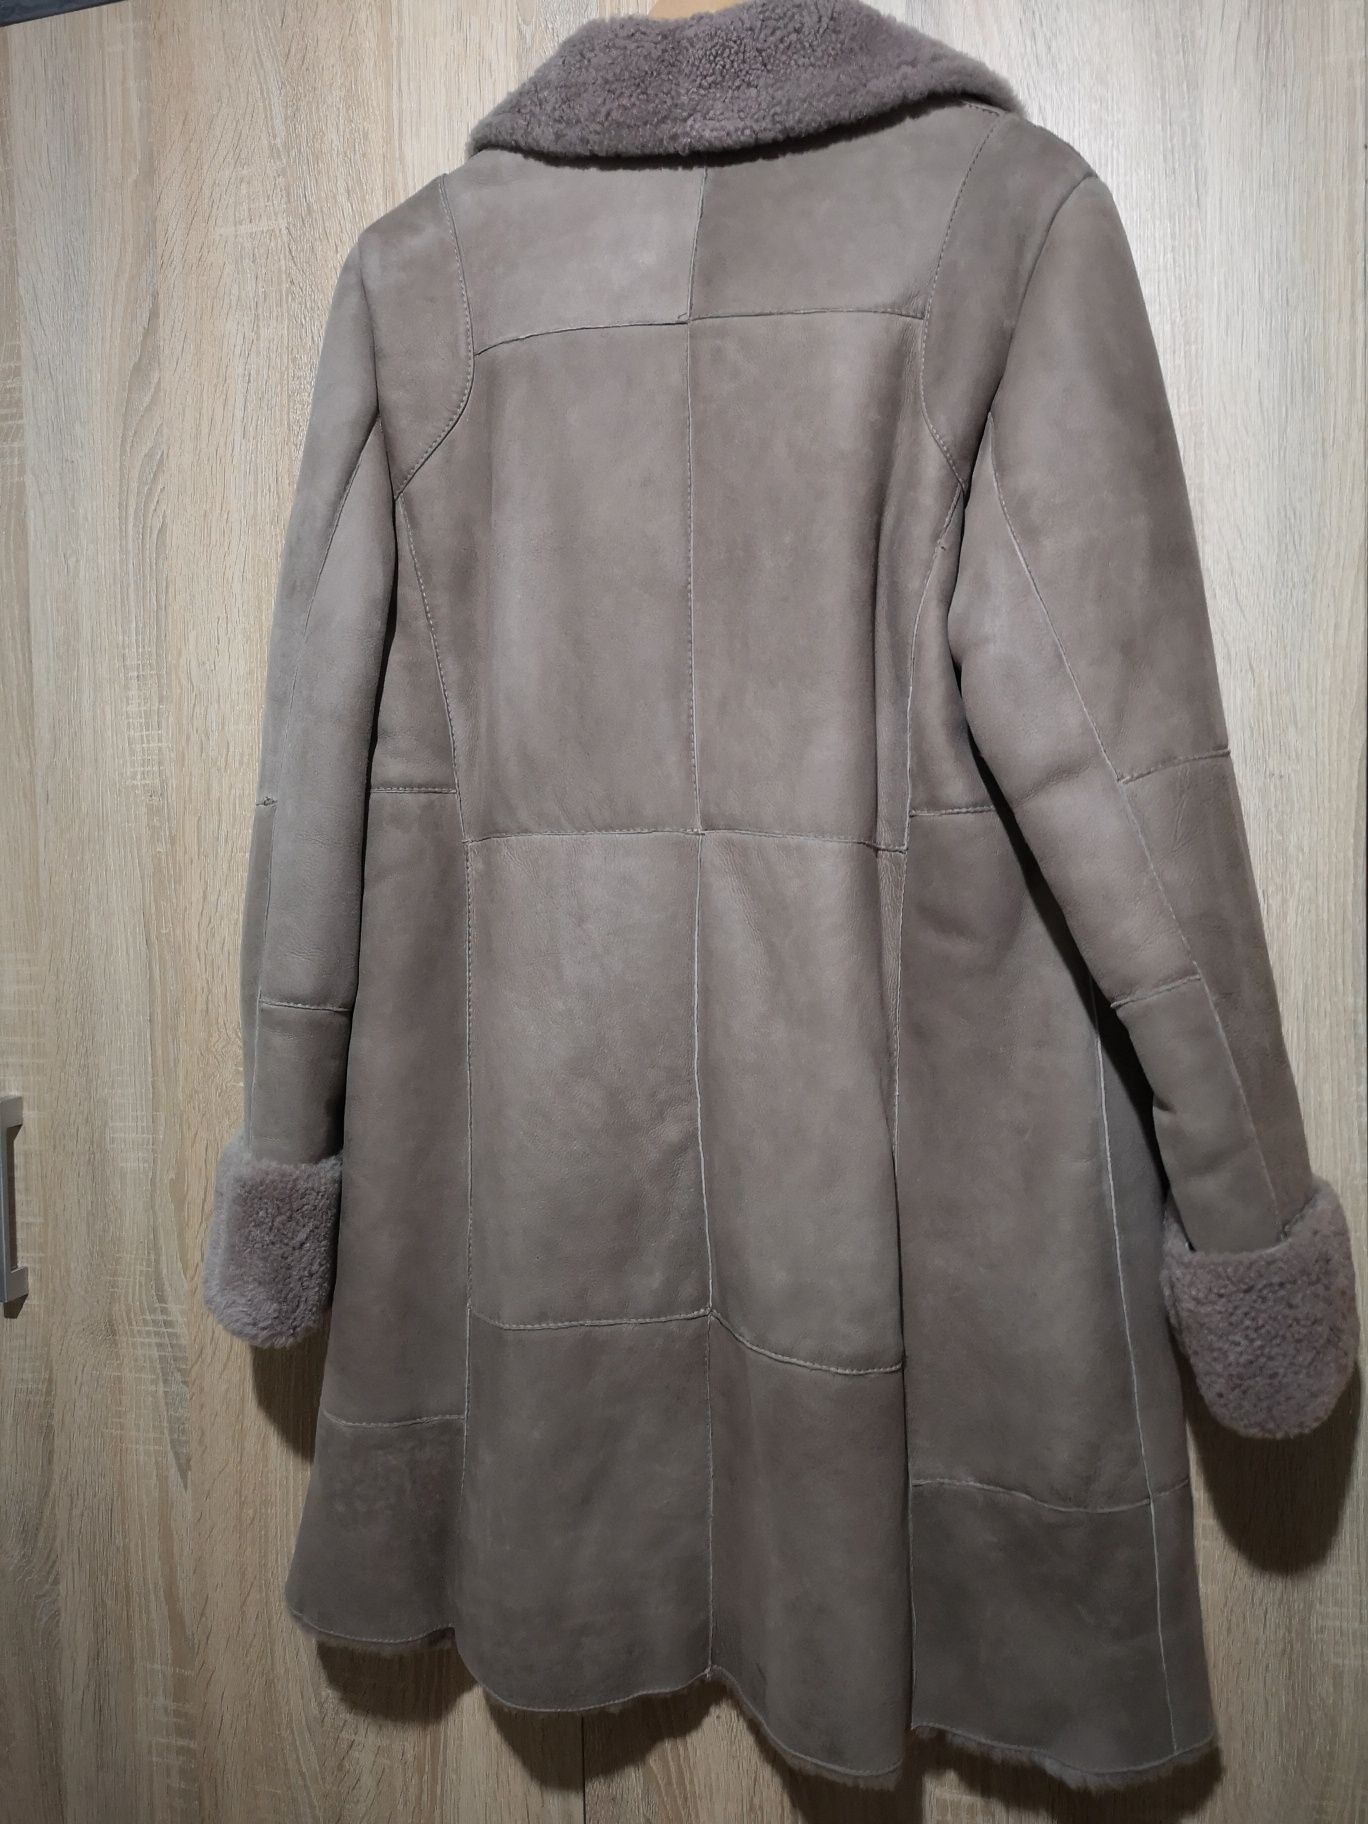 Palton din piele întoarsă FRAUENSCHUH (haina, cojoc)